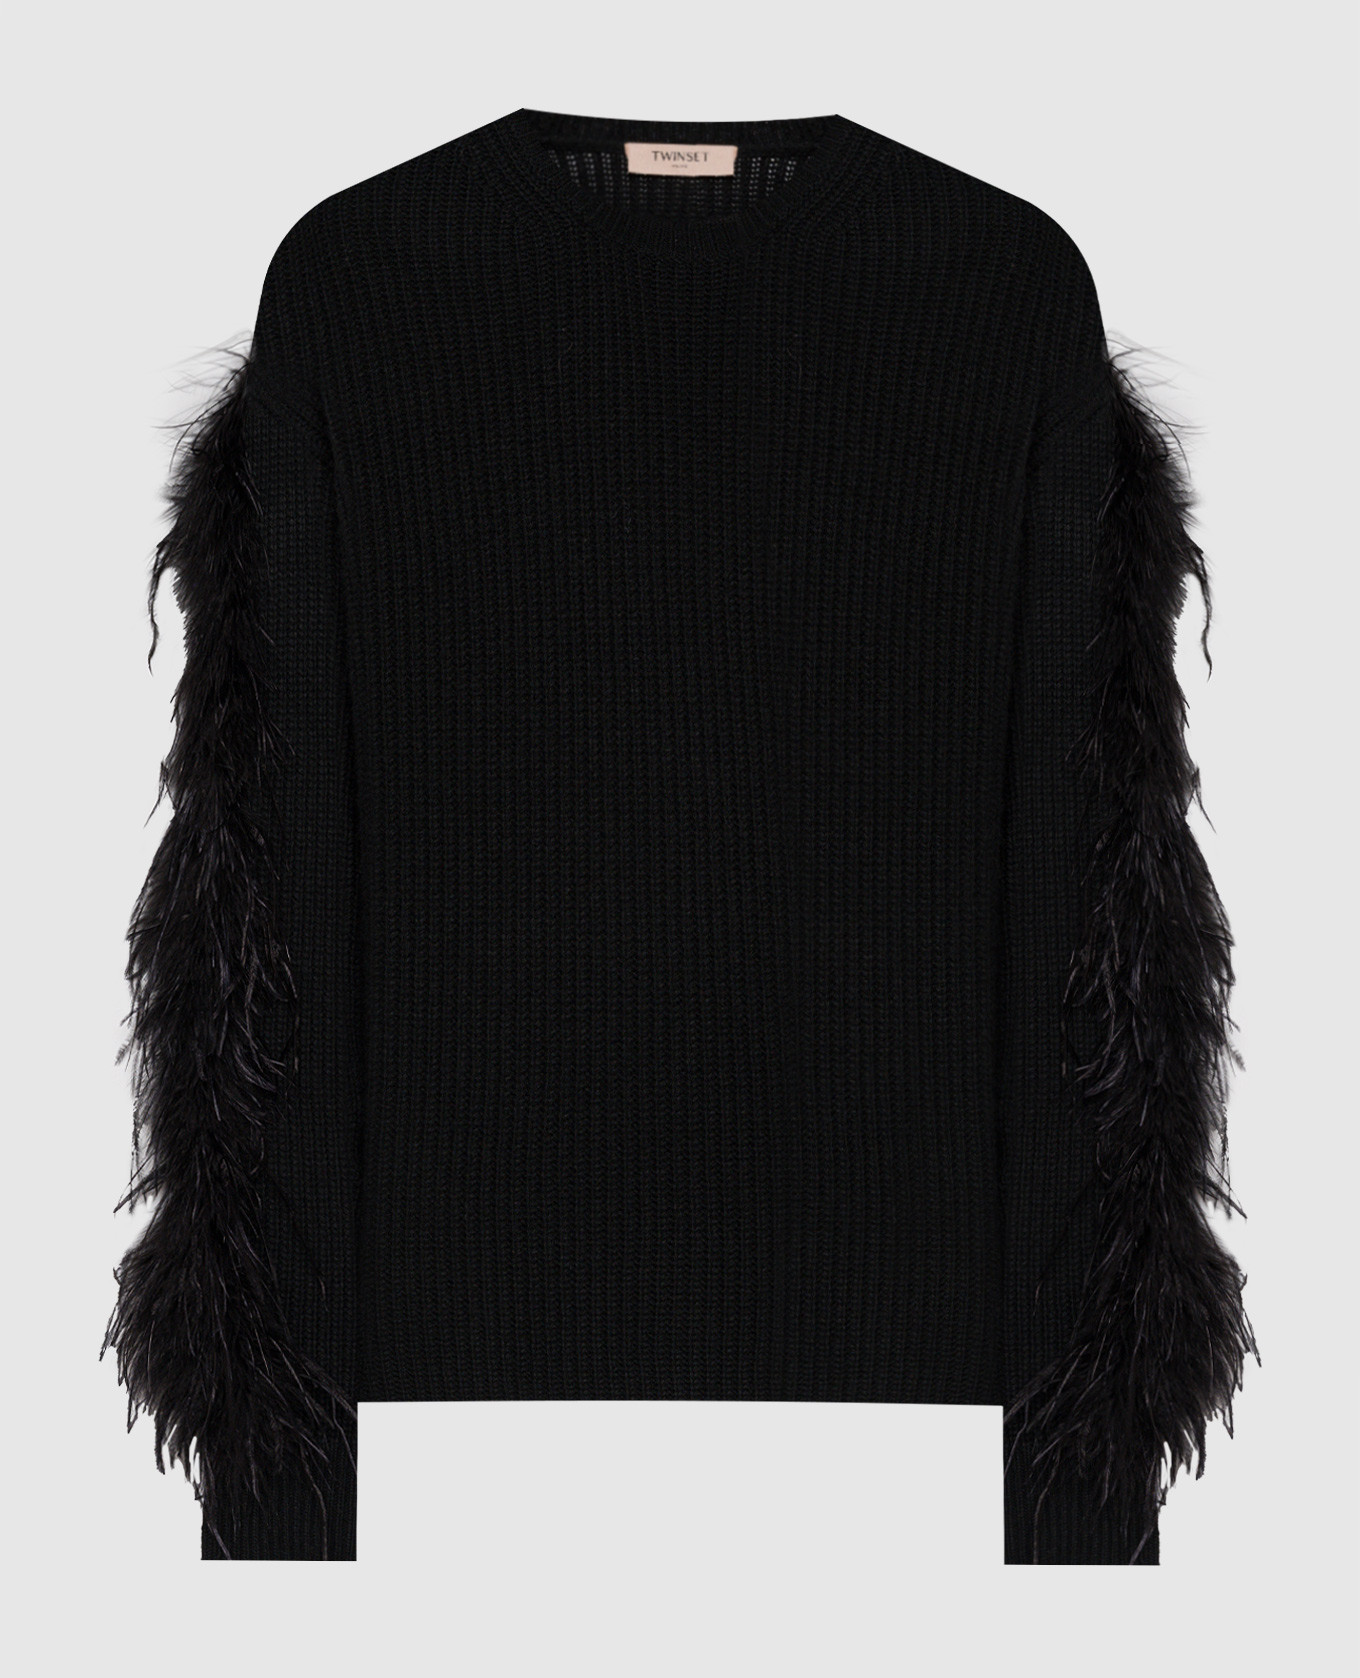 Черный свитер с перьями страуса